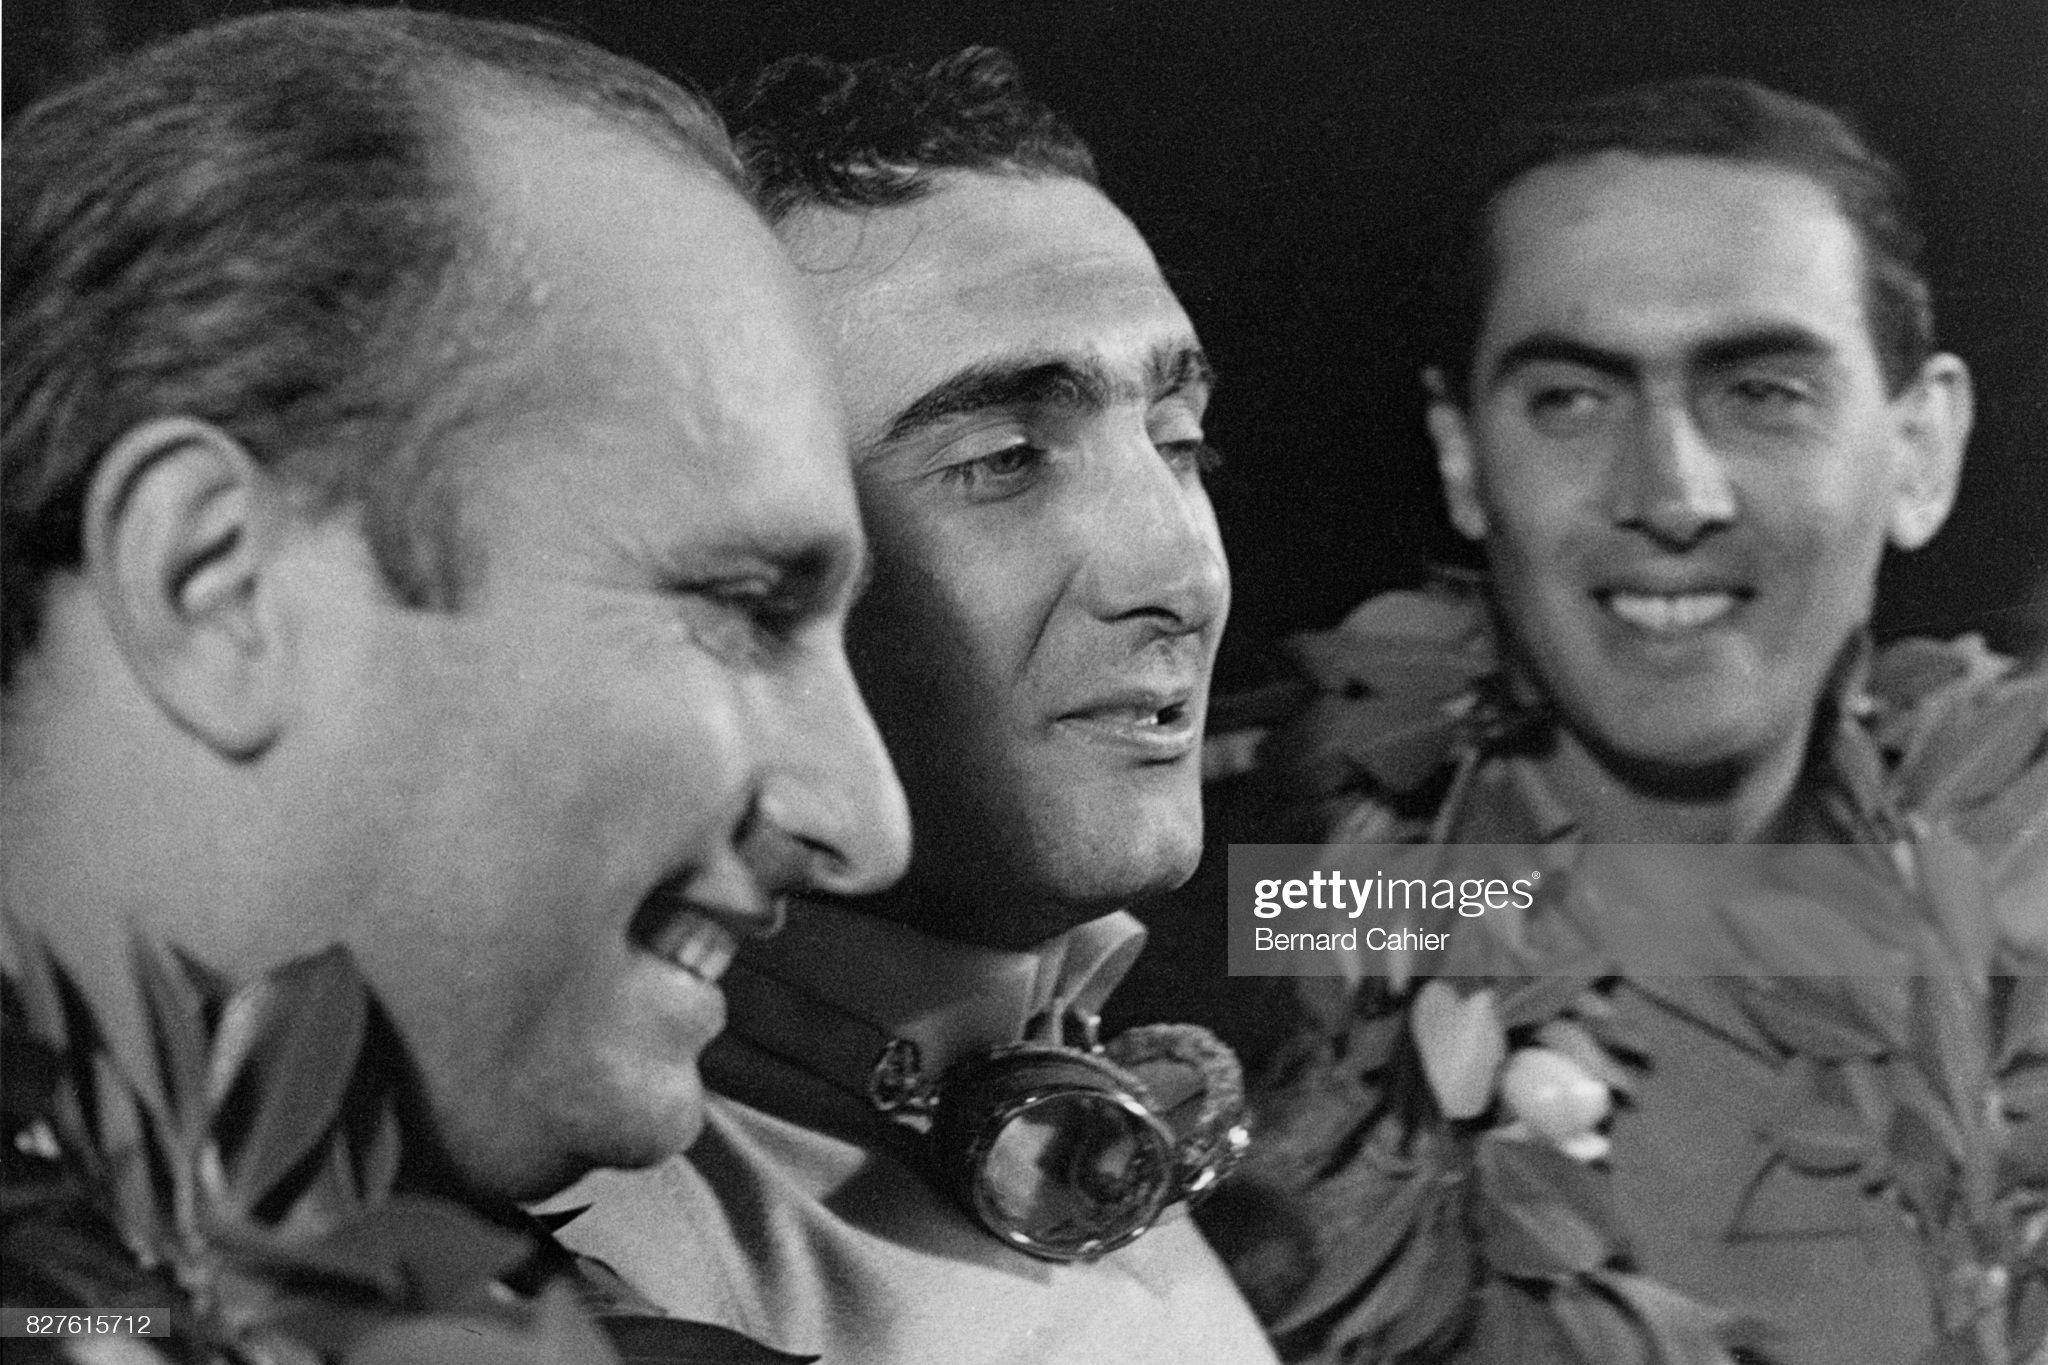 Juan Manuel Fangio, Eugenio Castellotti and Luigi Musso.